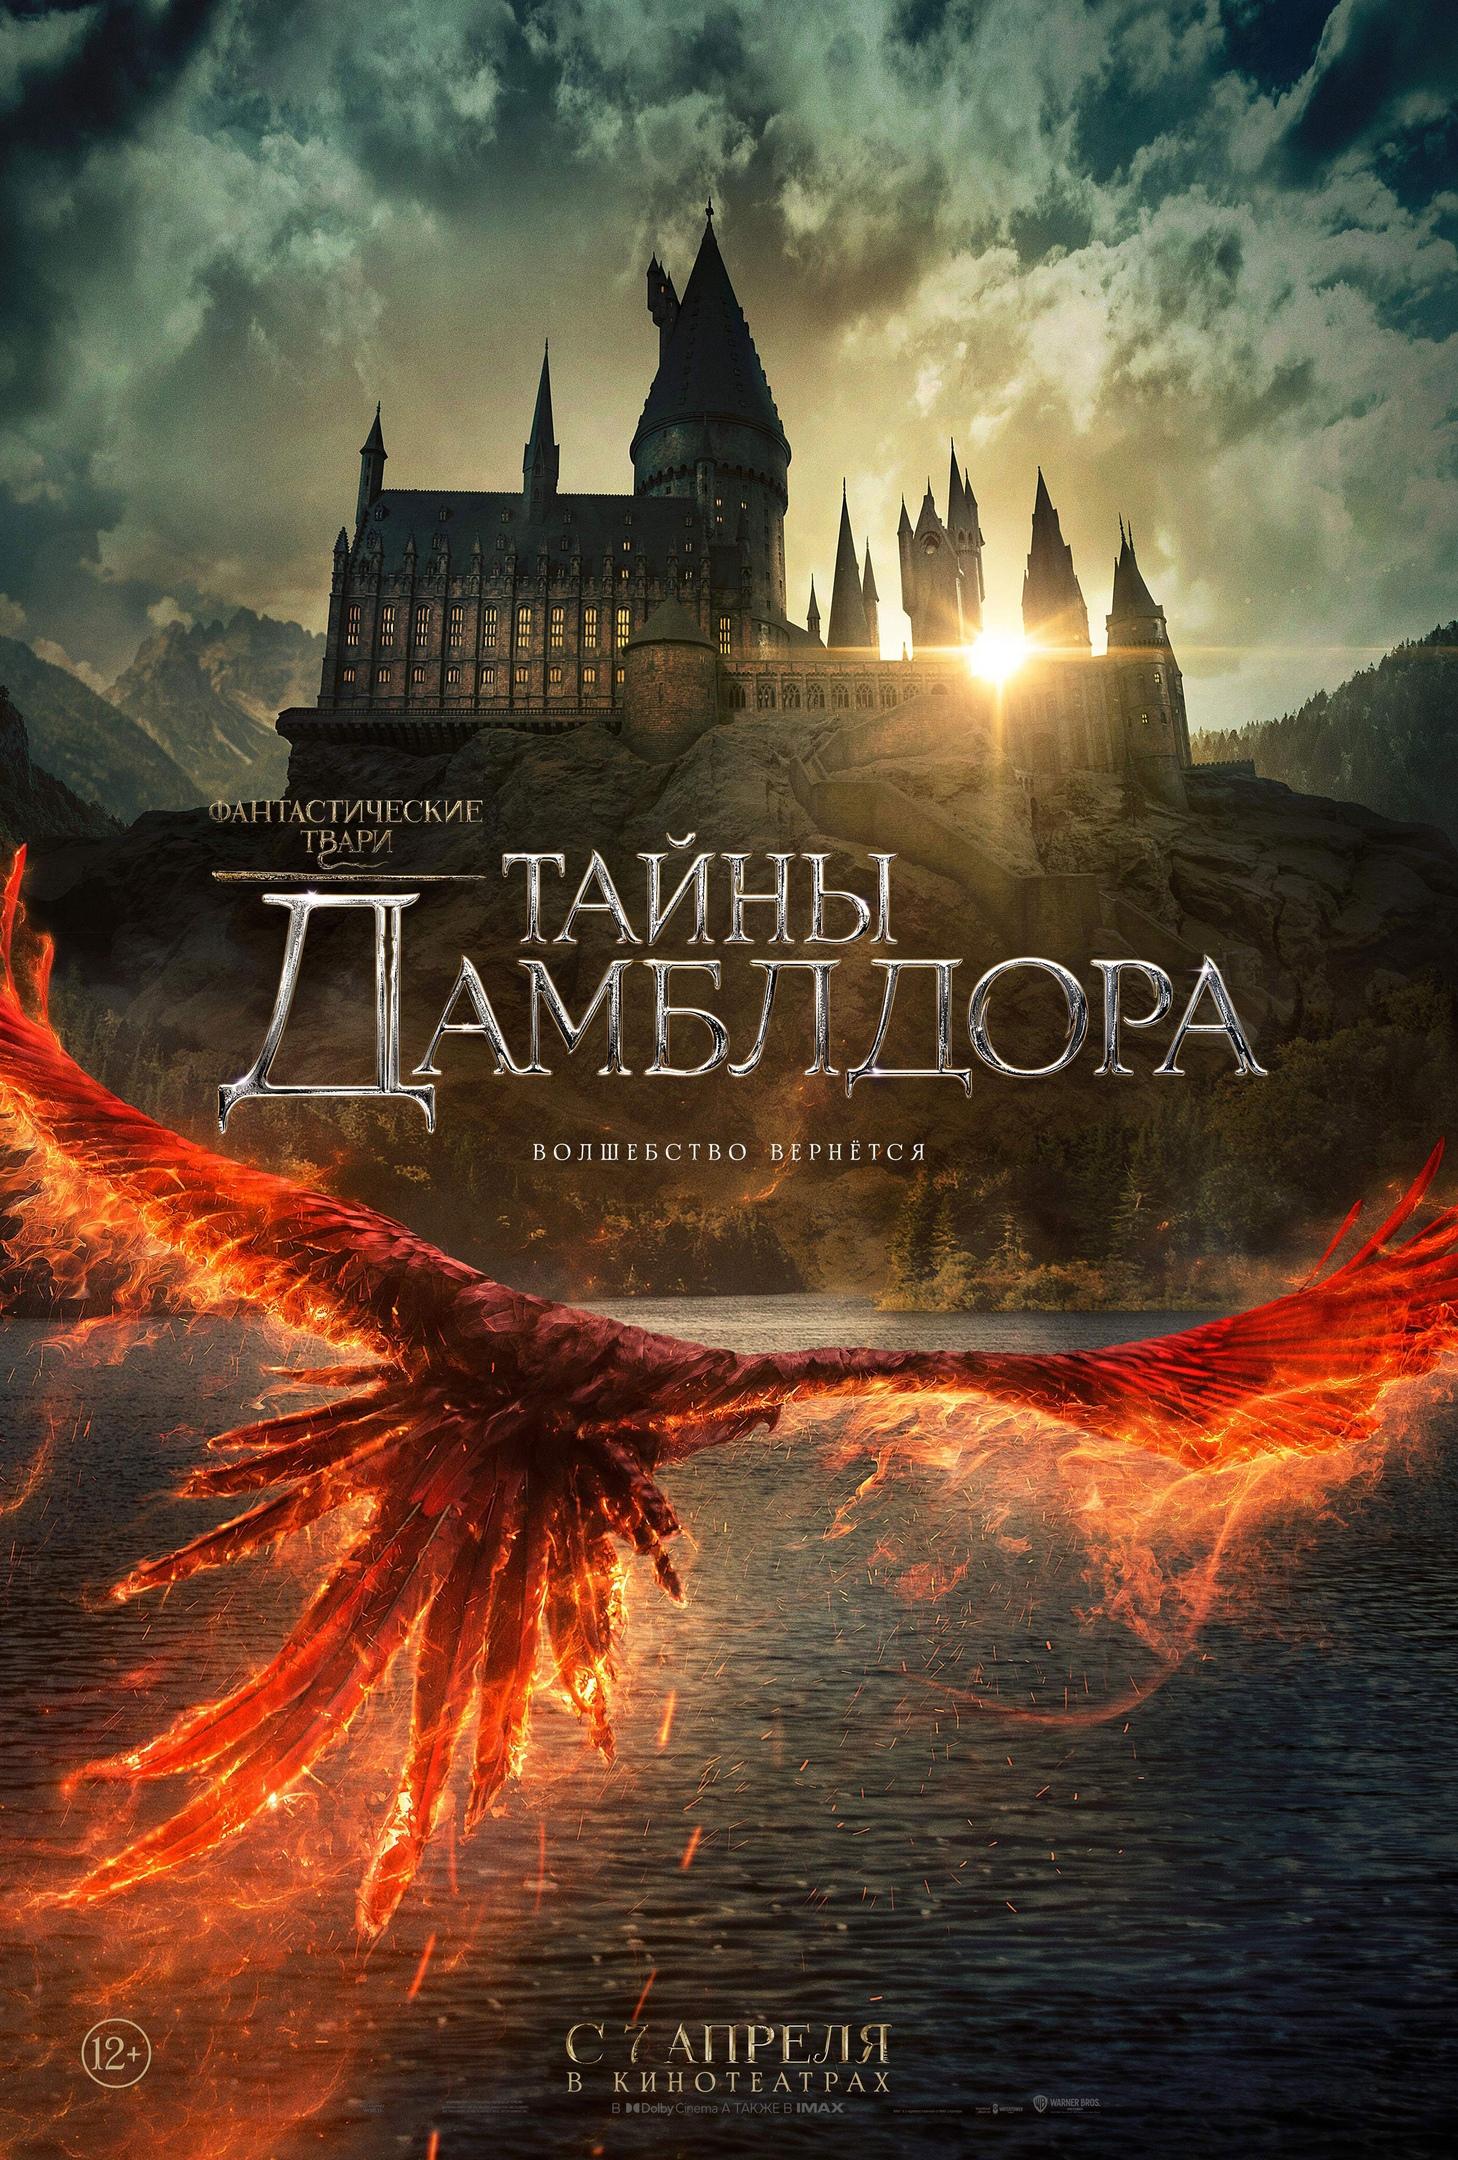 Постер фильма Фантастические твари: Тайны Дамблдора | Fantastic Beasts: The Secrets of Dumbledore